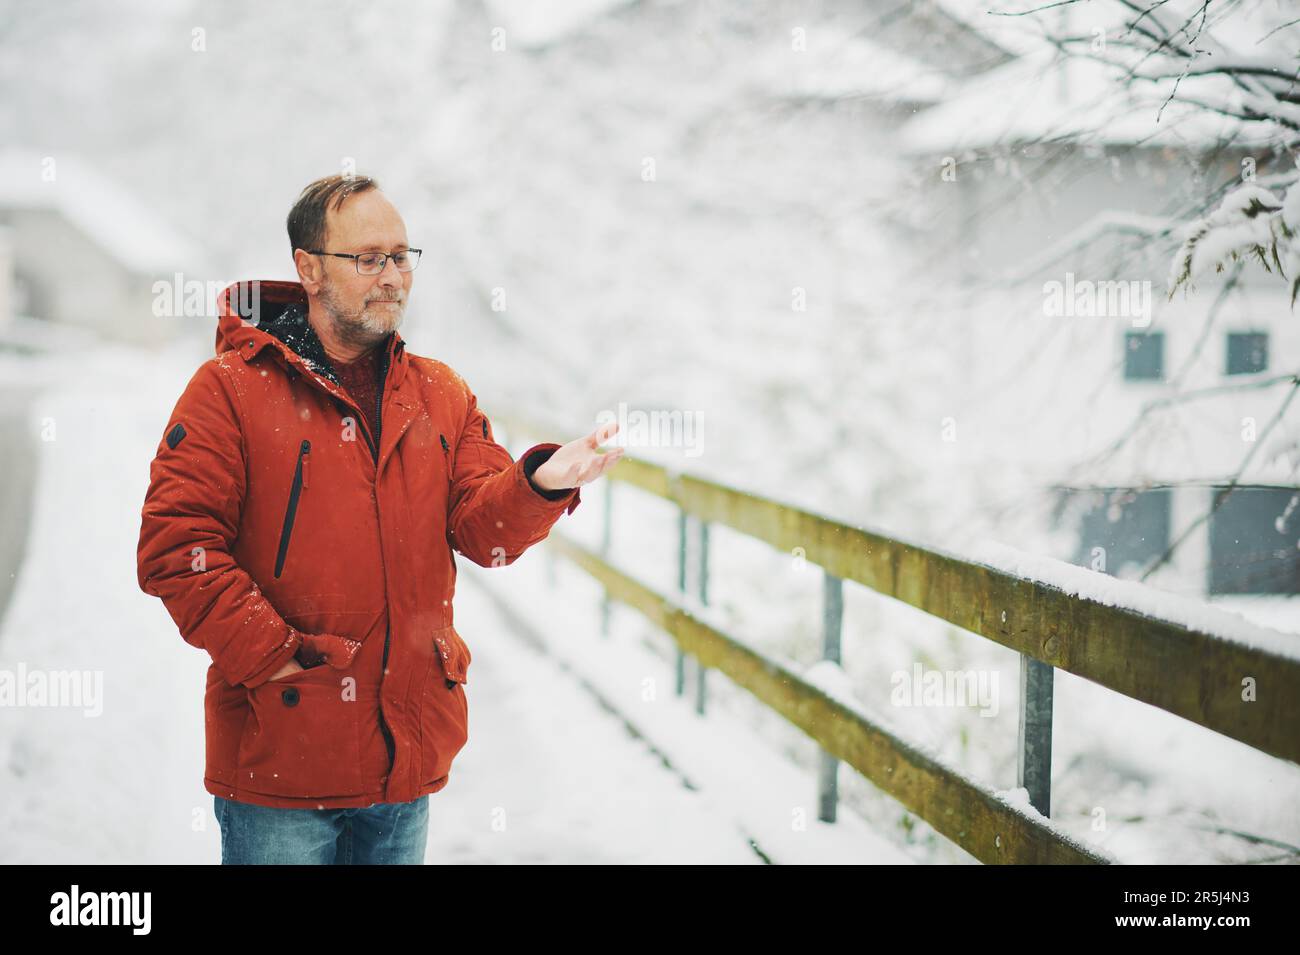 Ritratto all'aperto dell'uomo di mezza età, 55 - 60 anni, piacevole giornata fredda, indossando una giacca invernale rossa arancione Foto Stock